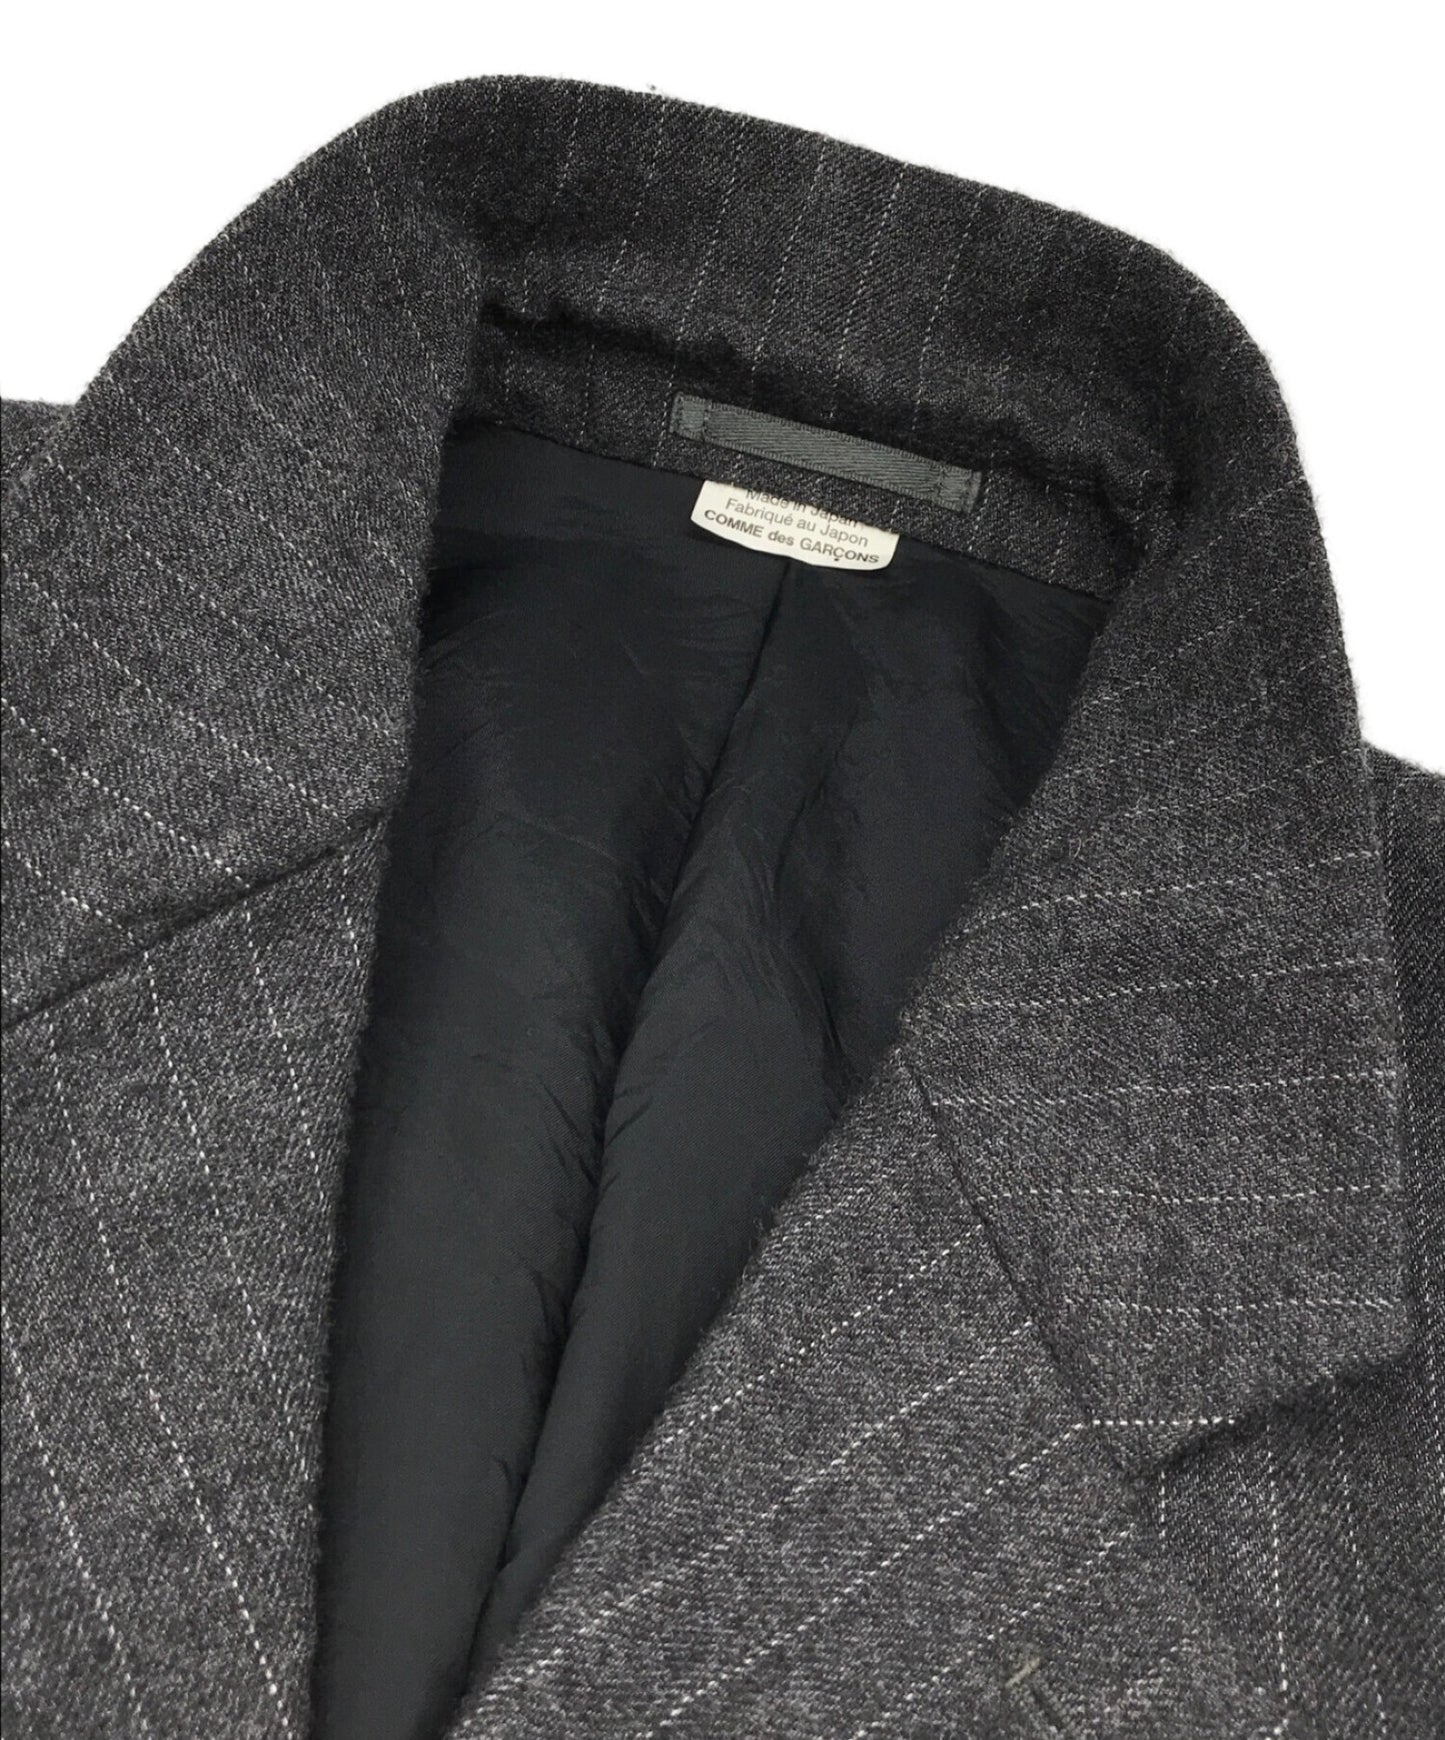 [Pre-owned] COMME des GARCONS HOMME DEUX Wrinkled Pinstripe Pattern 4B Tailored Jacket DJ-J025